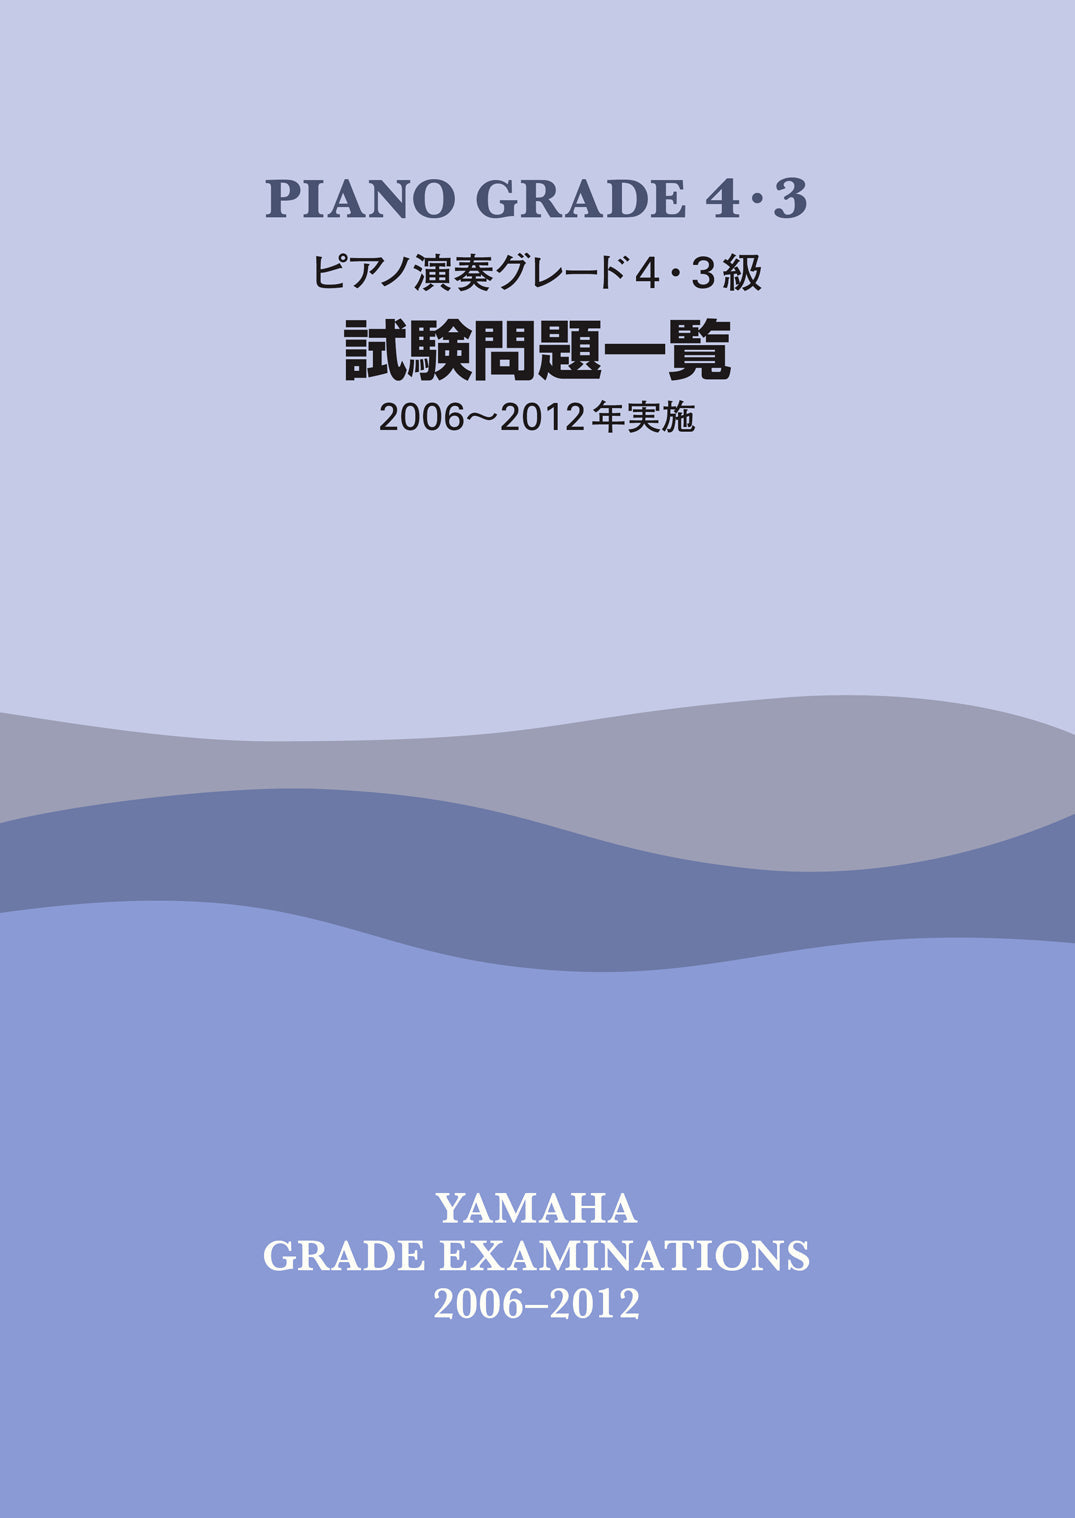 ピアノ演奏グレード 4・3級試験問題一覧 2006～2012年実施